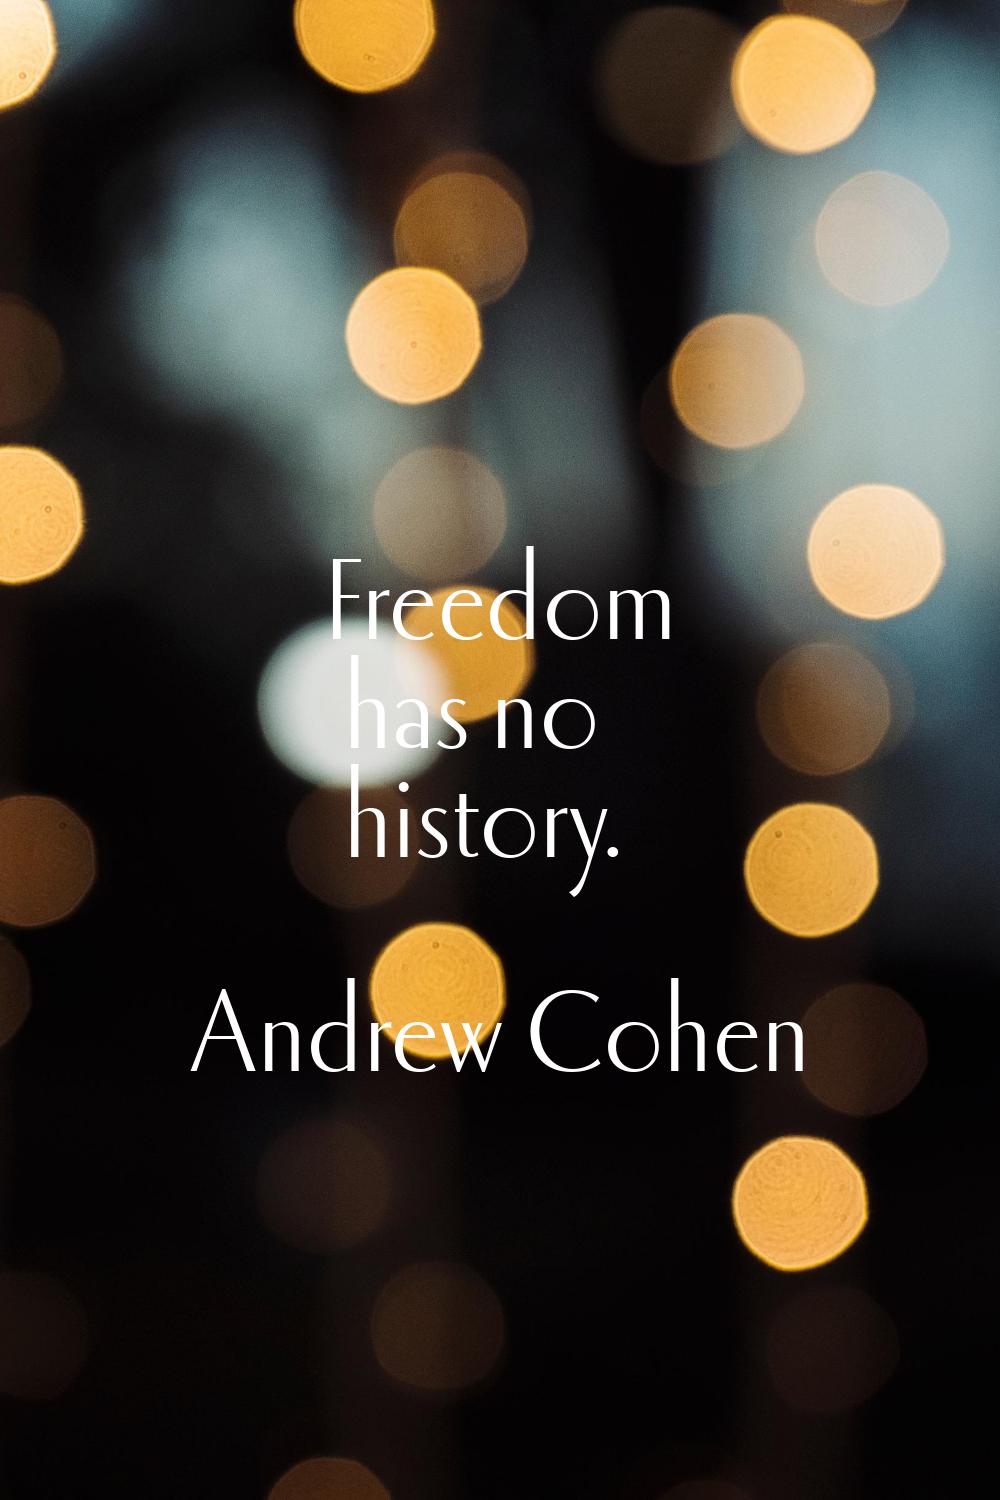 Freedom has no history.